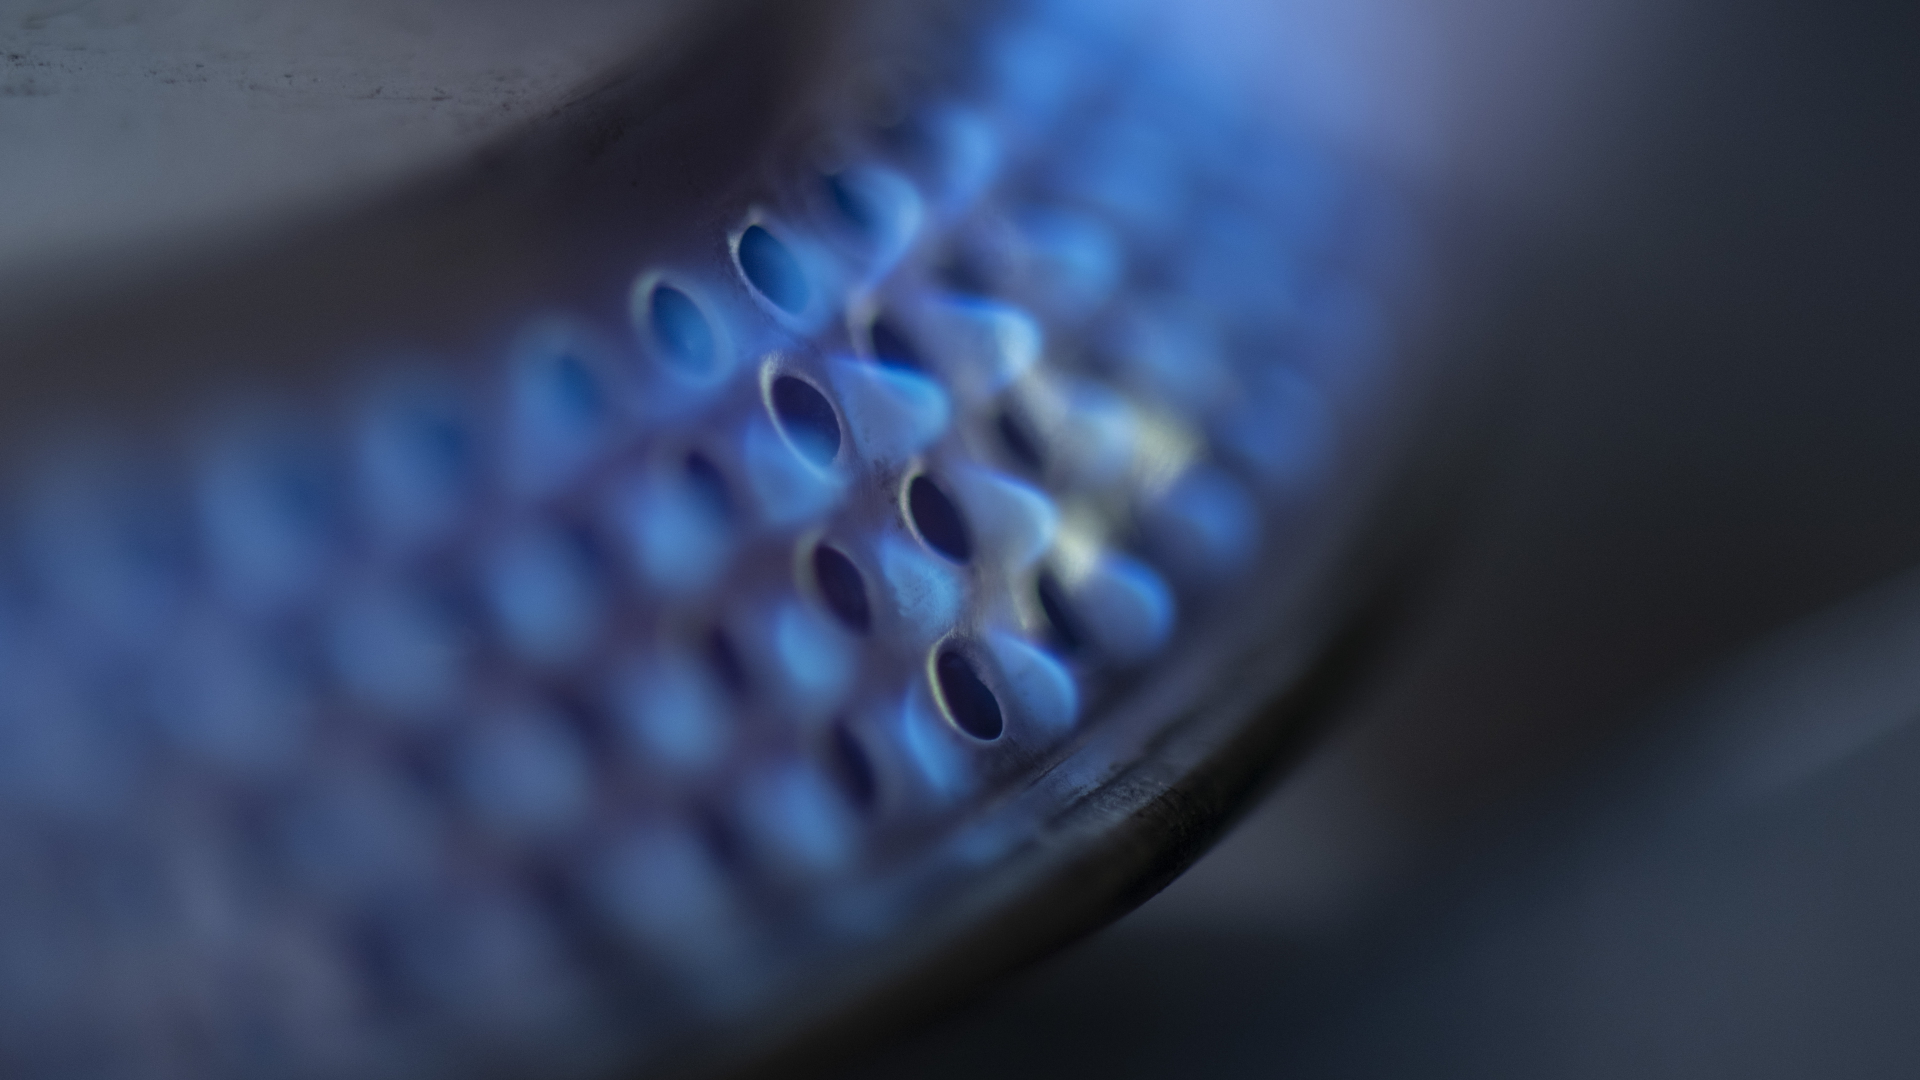 Entlastung der Gaskunden: Verbraucherschützer reagieren skeptisch